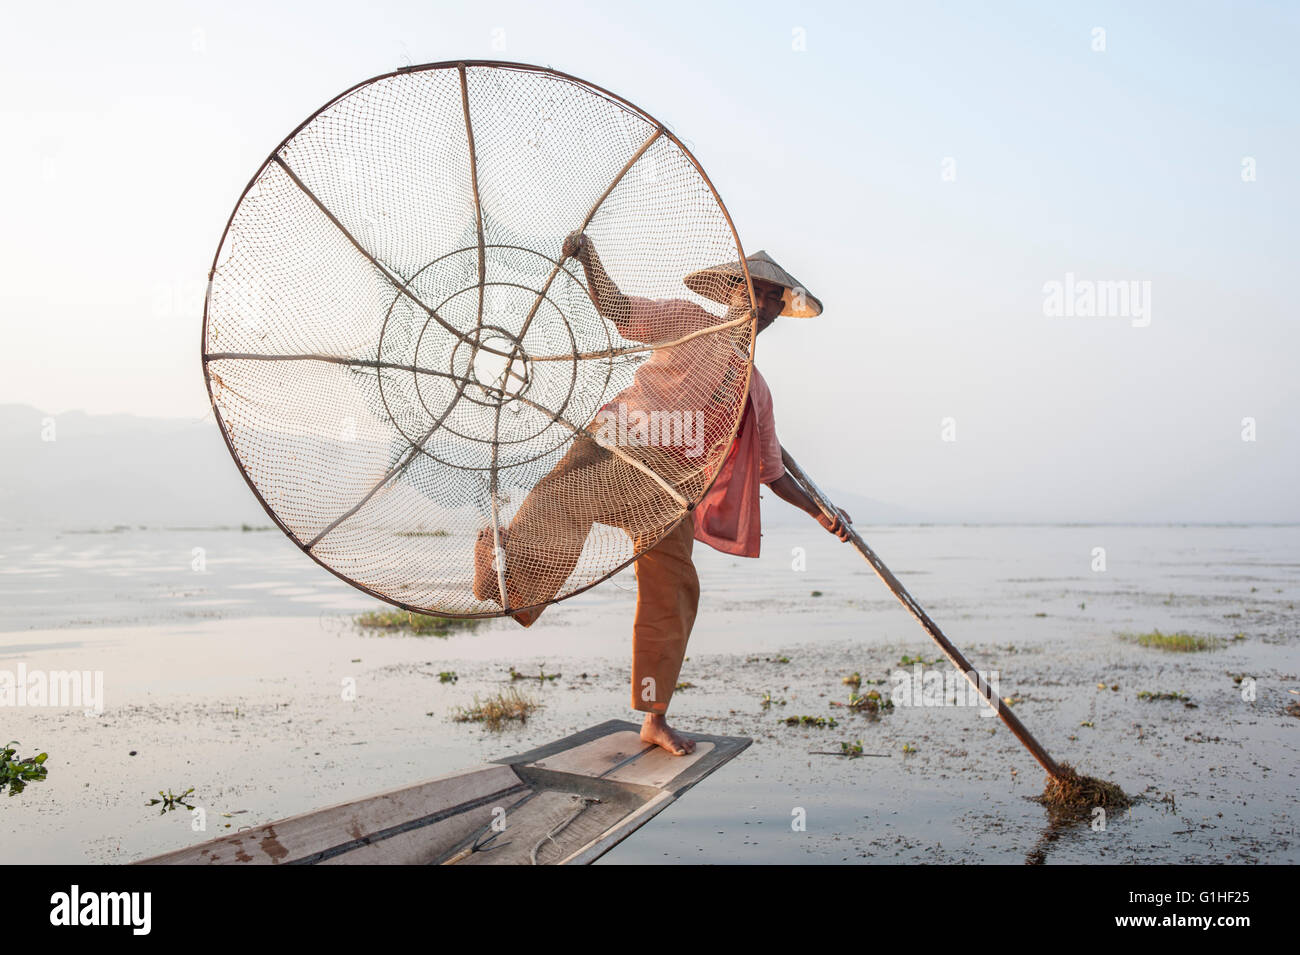 Pescatore tradizionale birmano con rete e pala singola da parte della minoranza Intha sul lago Inle nel nord-est di Myanmar, Birmania in Asia. Foto Stock